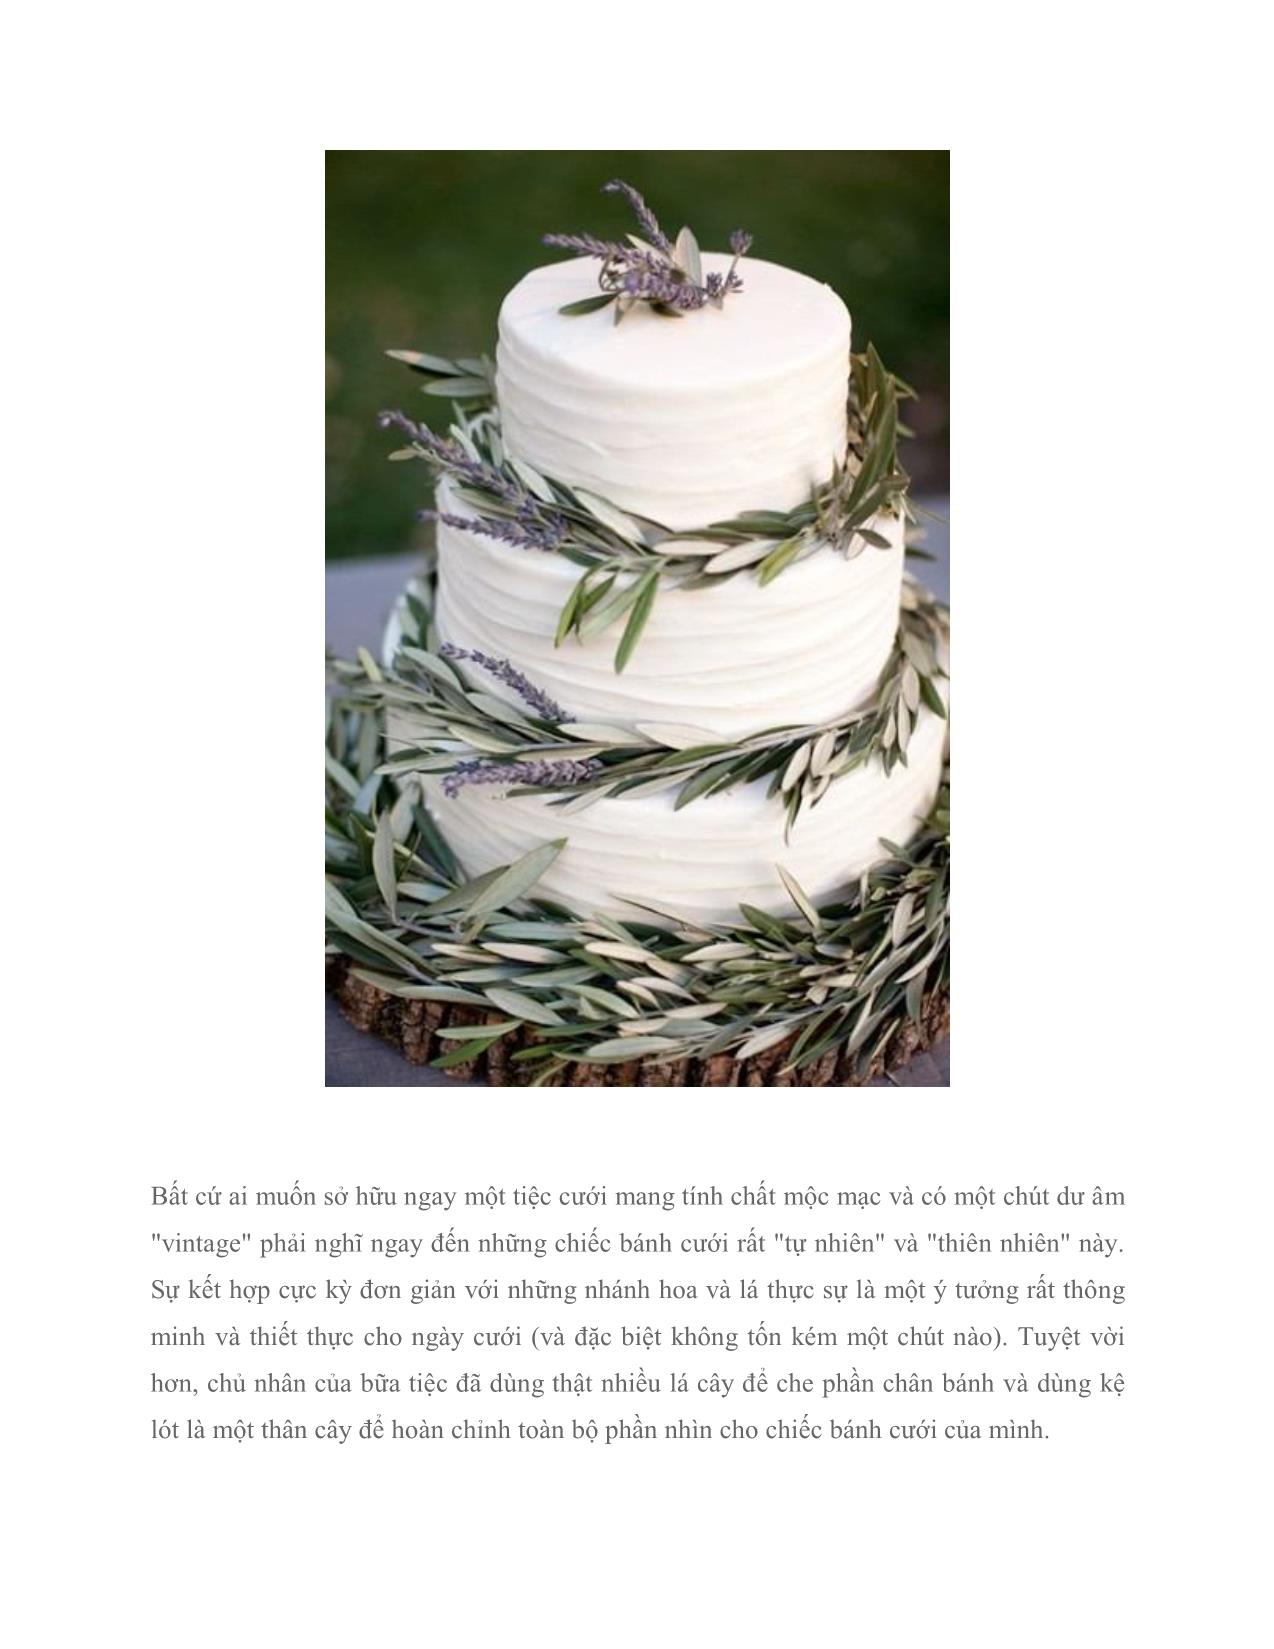 Bánh cưới trang trí với hoa: Dễ làm và ít tốn kém trang 2